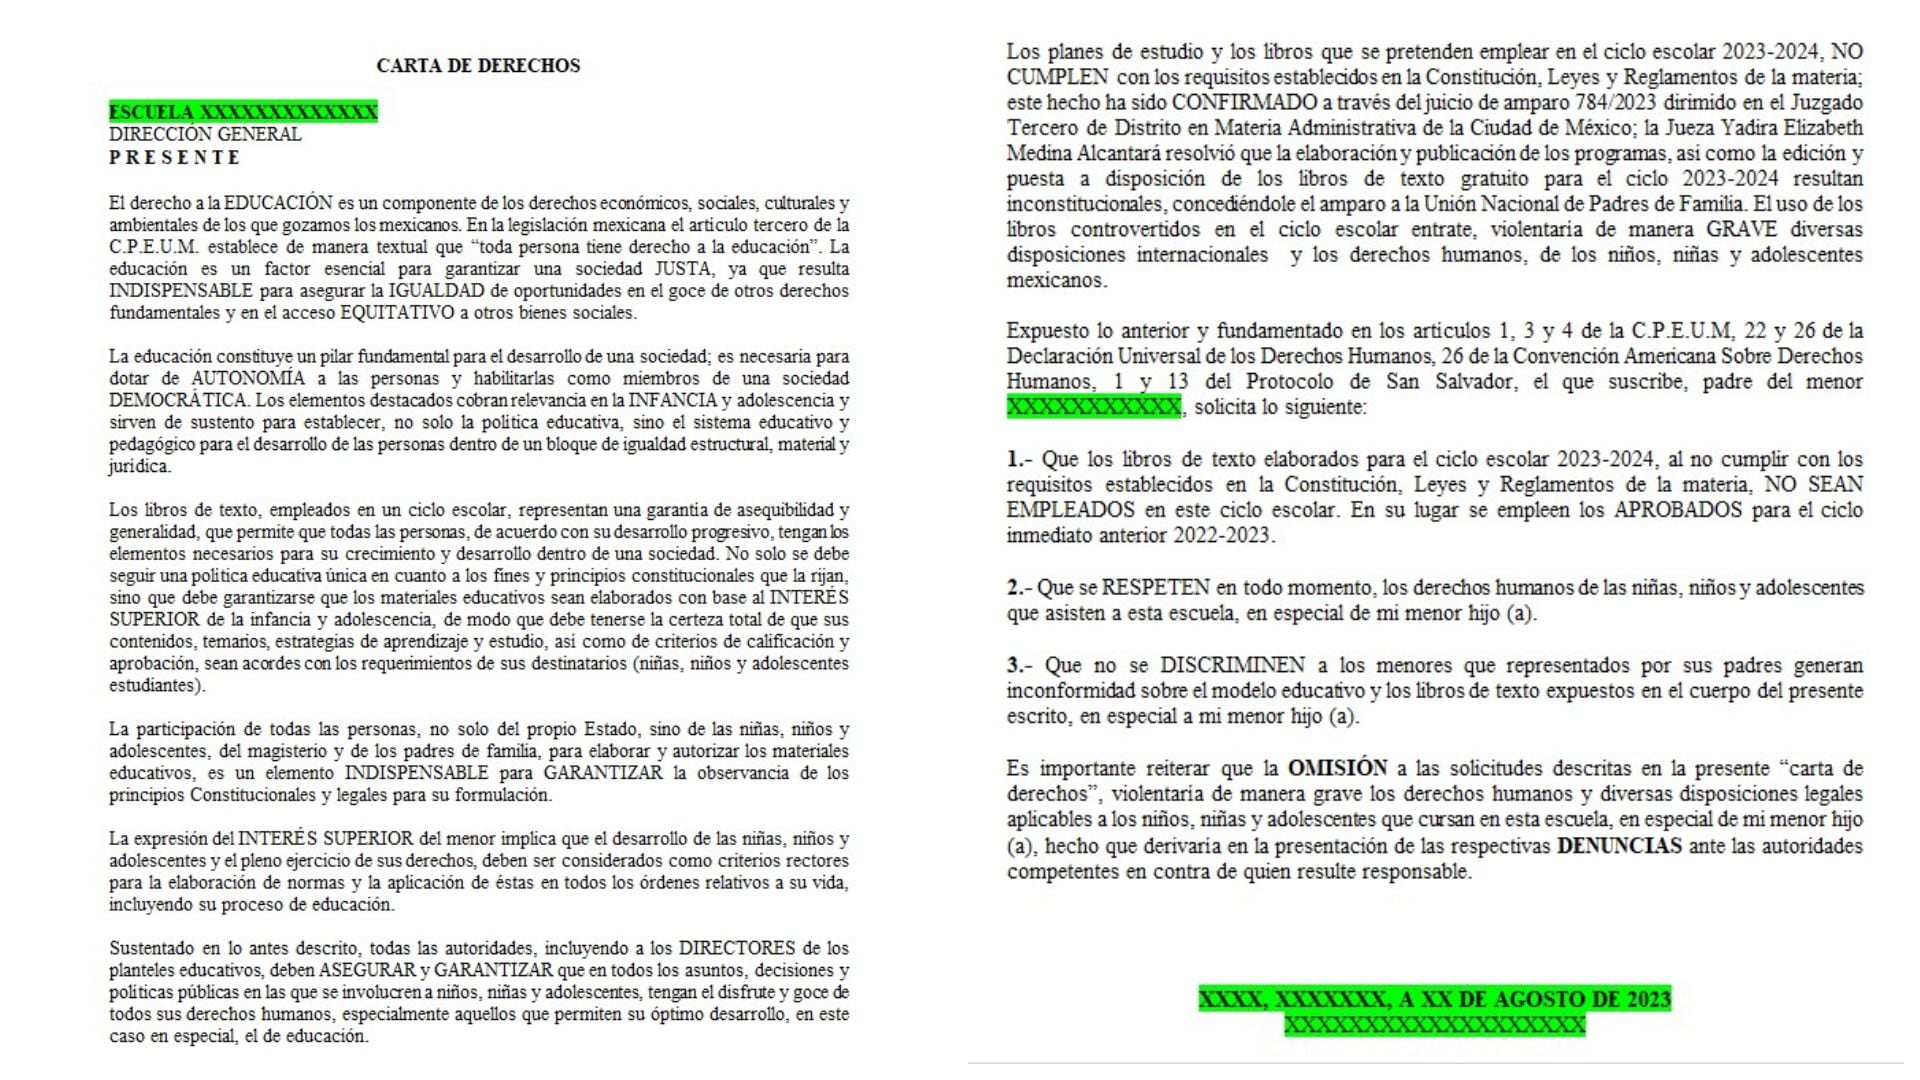 (Carta de Derechos elaborada por la UNPF y la Asociación Abogados Cristianos (Captura de pantalla)